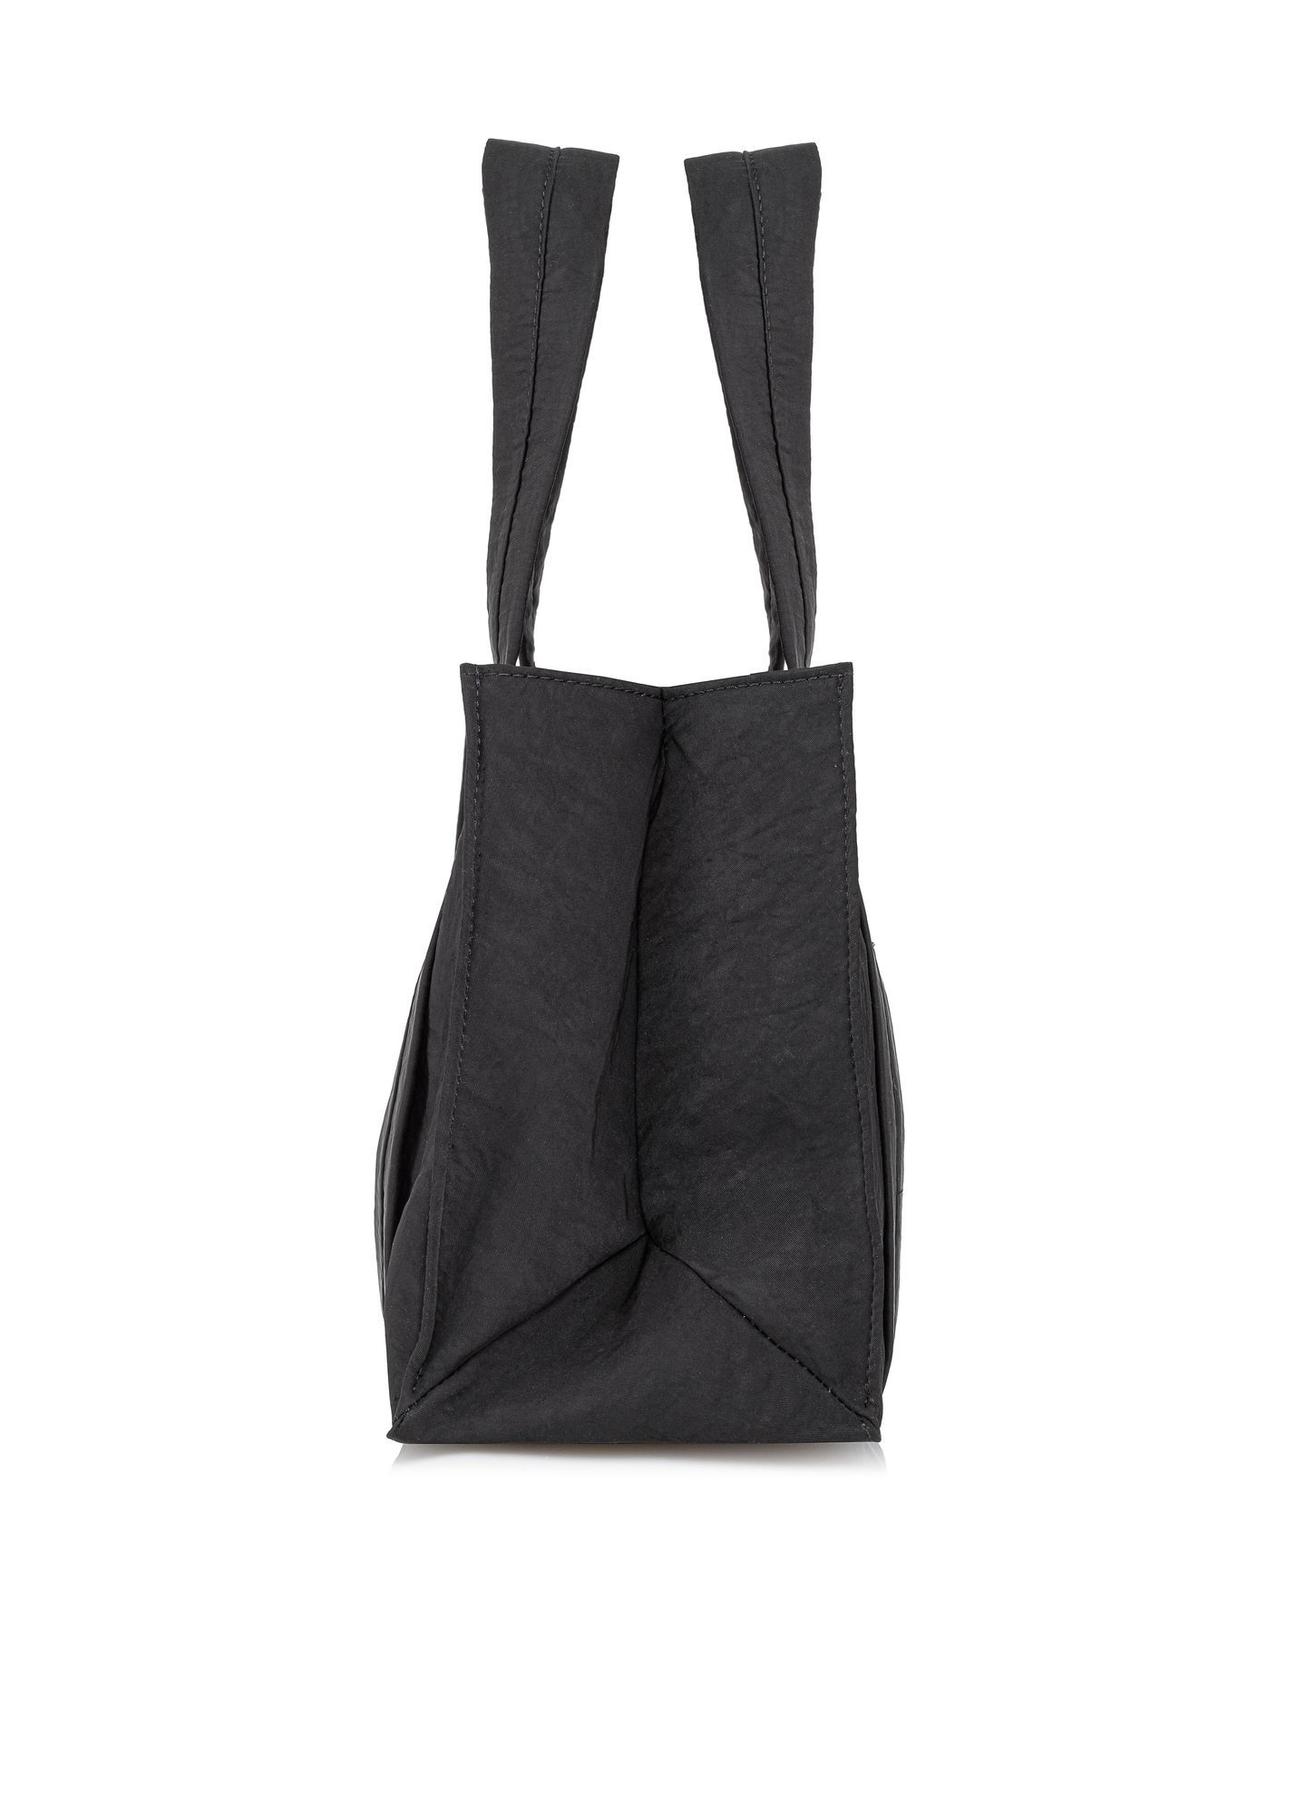 Czarna torebka damska typu tote bag TOREN-0249-99(W23)